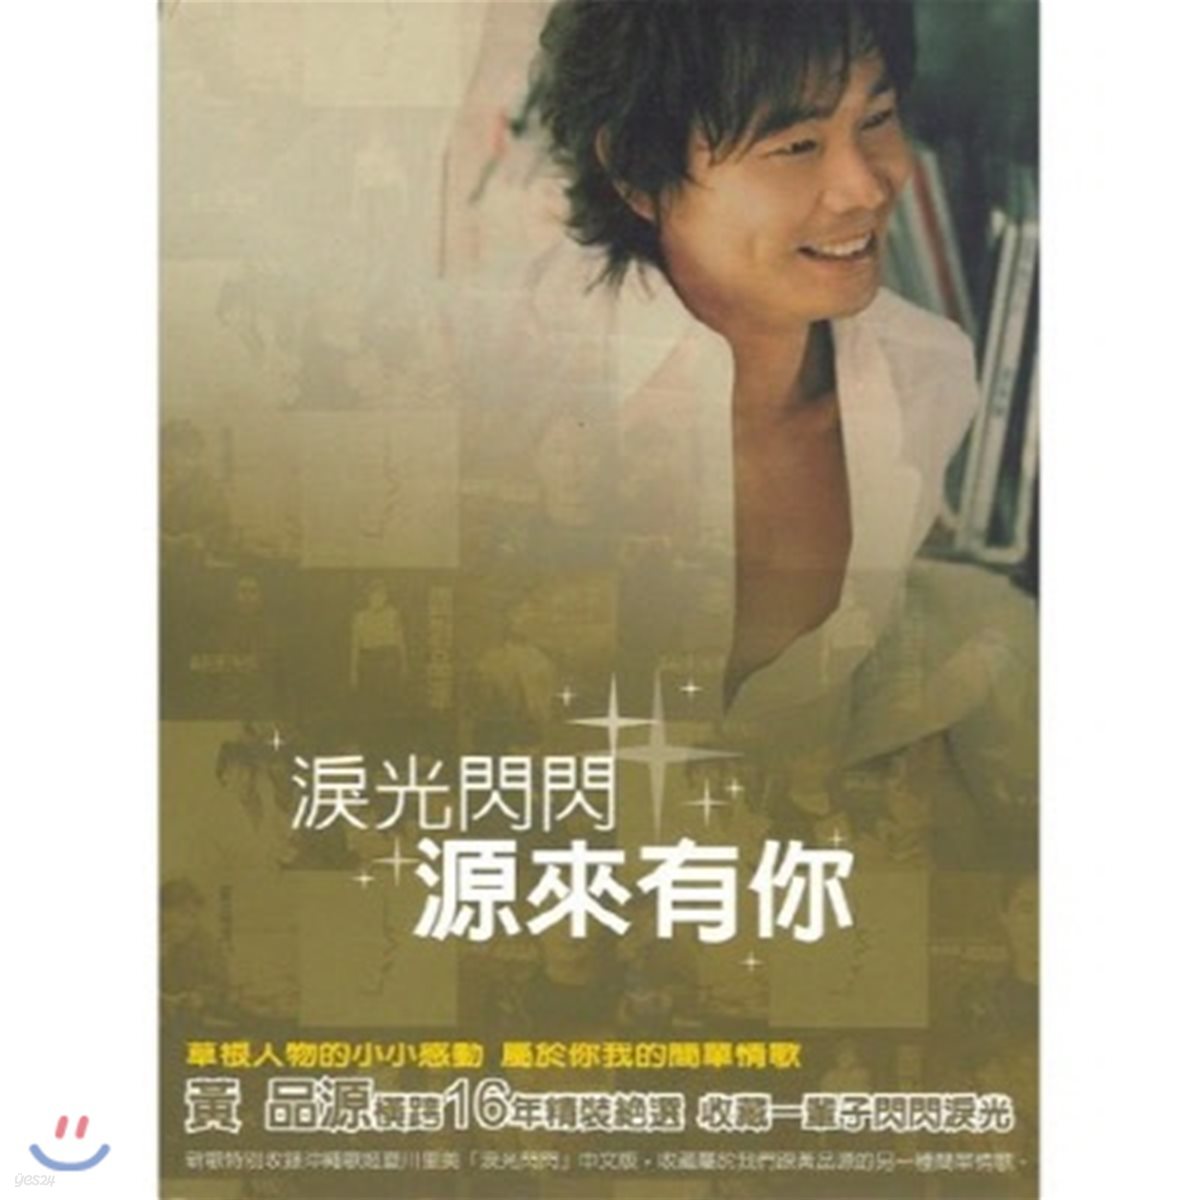 [중고] Huang Pin Yuan / 淚光閃閃．源來有&#20320; [新曲 + 精選雙&#30879;版] [New + Best Selection] (수입/2CD/rd17904)